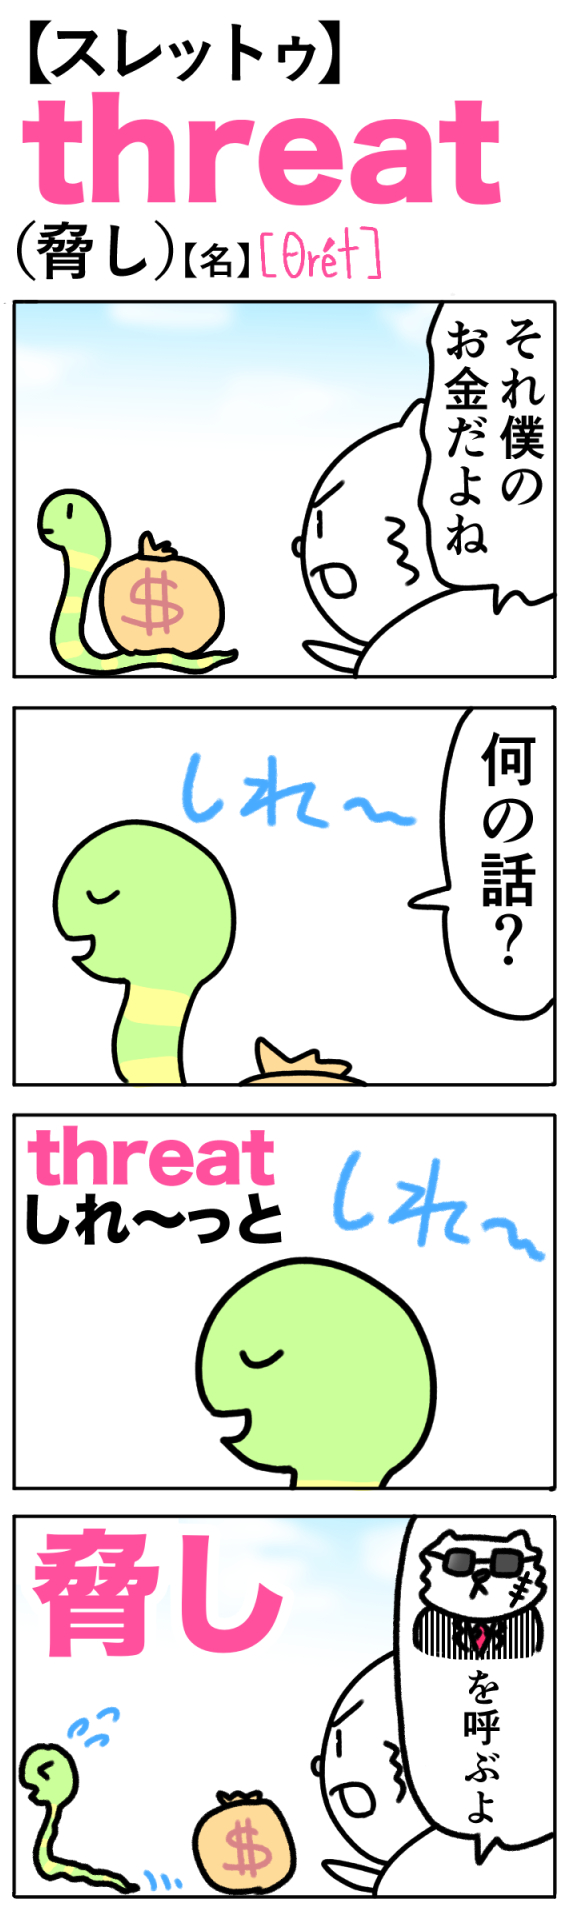 threat（脅し）の語呂合わせ英単語